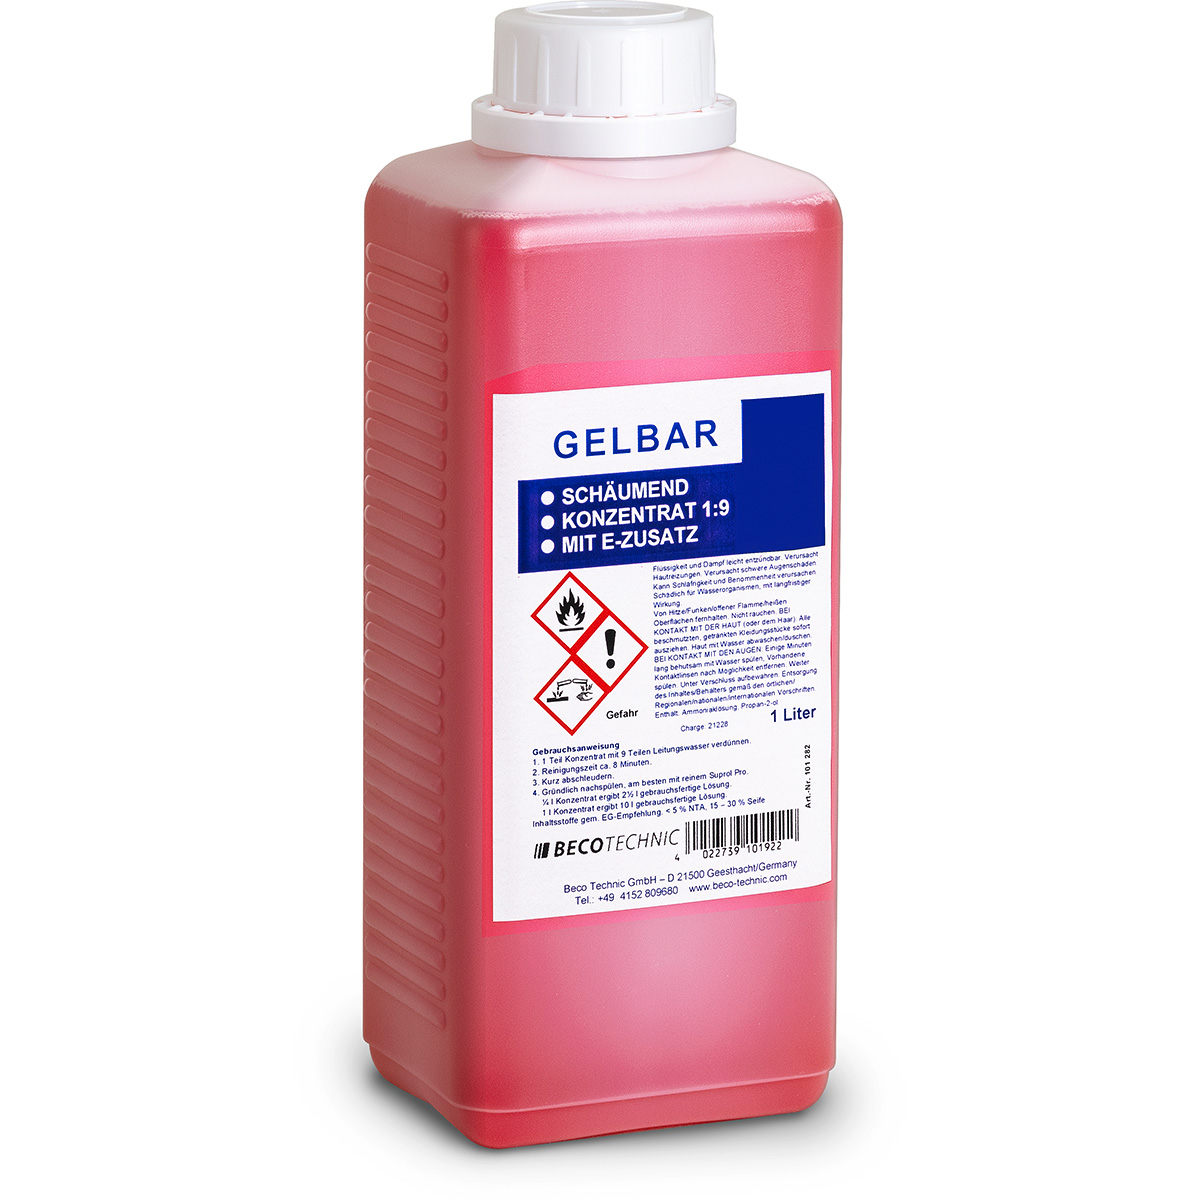 Gelbar solution concentré 1:9 à 10 litres